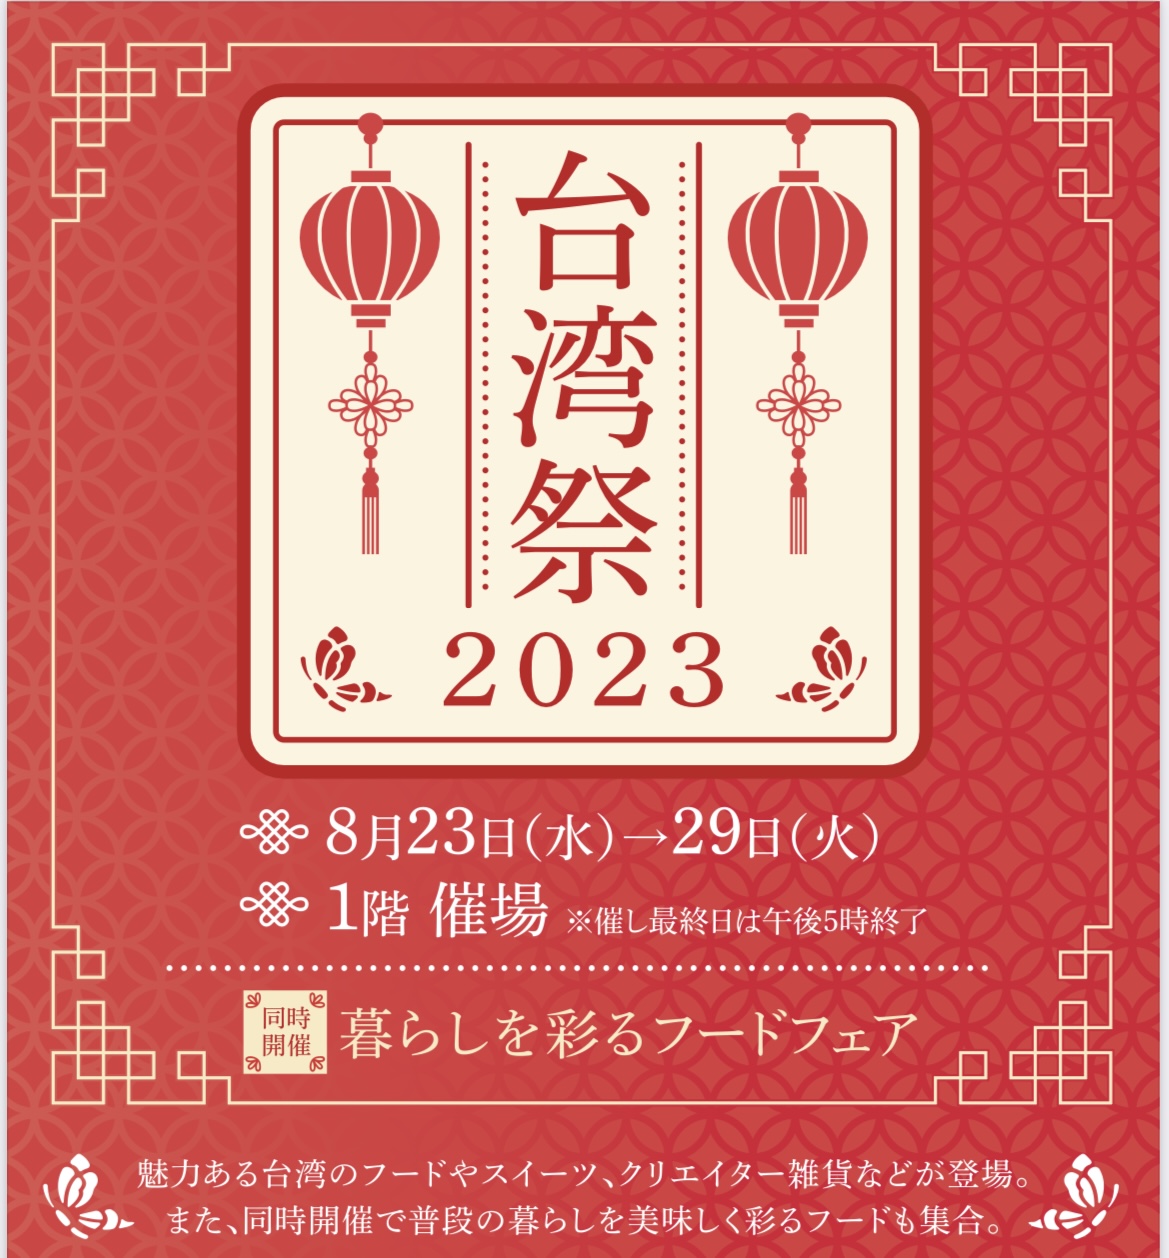 【出店情報】台湾祭2023@西宮阪急百貨店